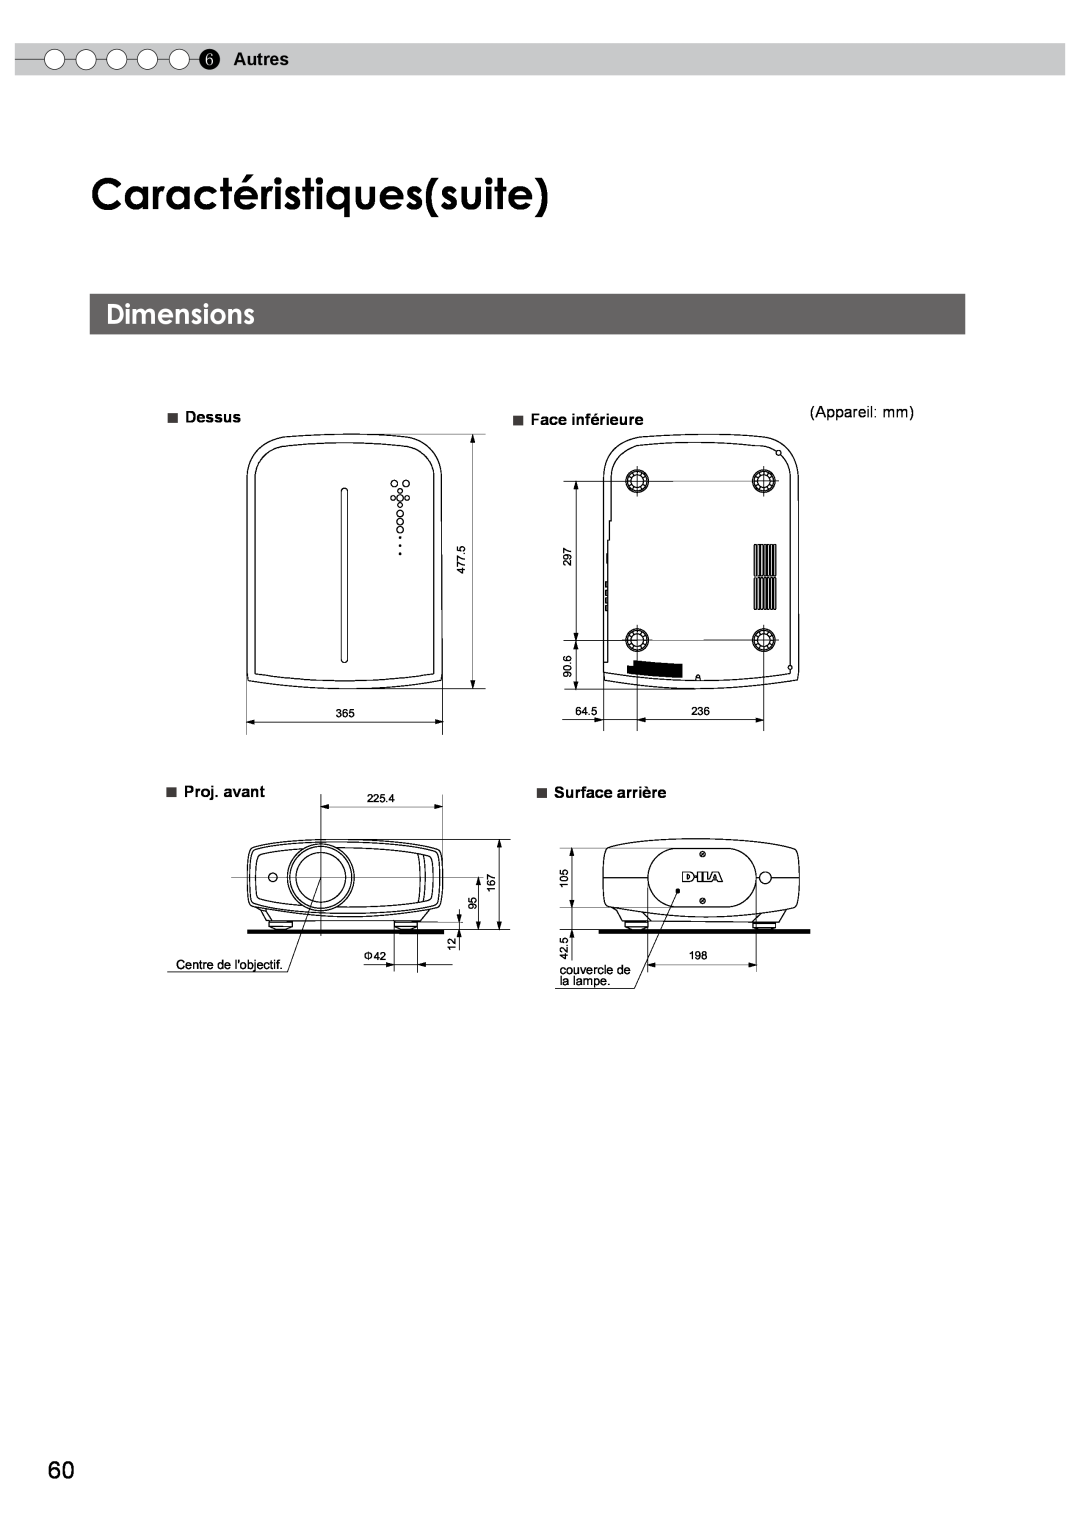 JVC DLA-HD750 manual Caractéristiquessuite, Dimensions, Autres, Appareil mm, Centre de lobjectif, couvercle de la lampe 